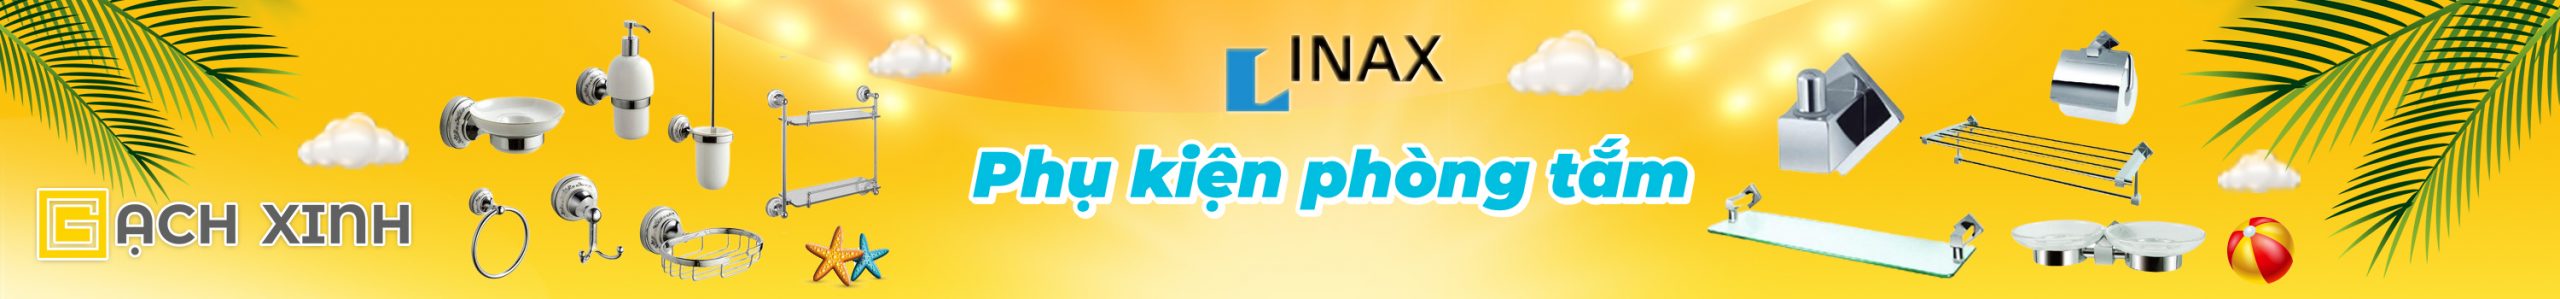 Banner Bộ Phụ Kiện Phòng Tắm INAX